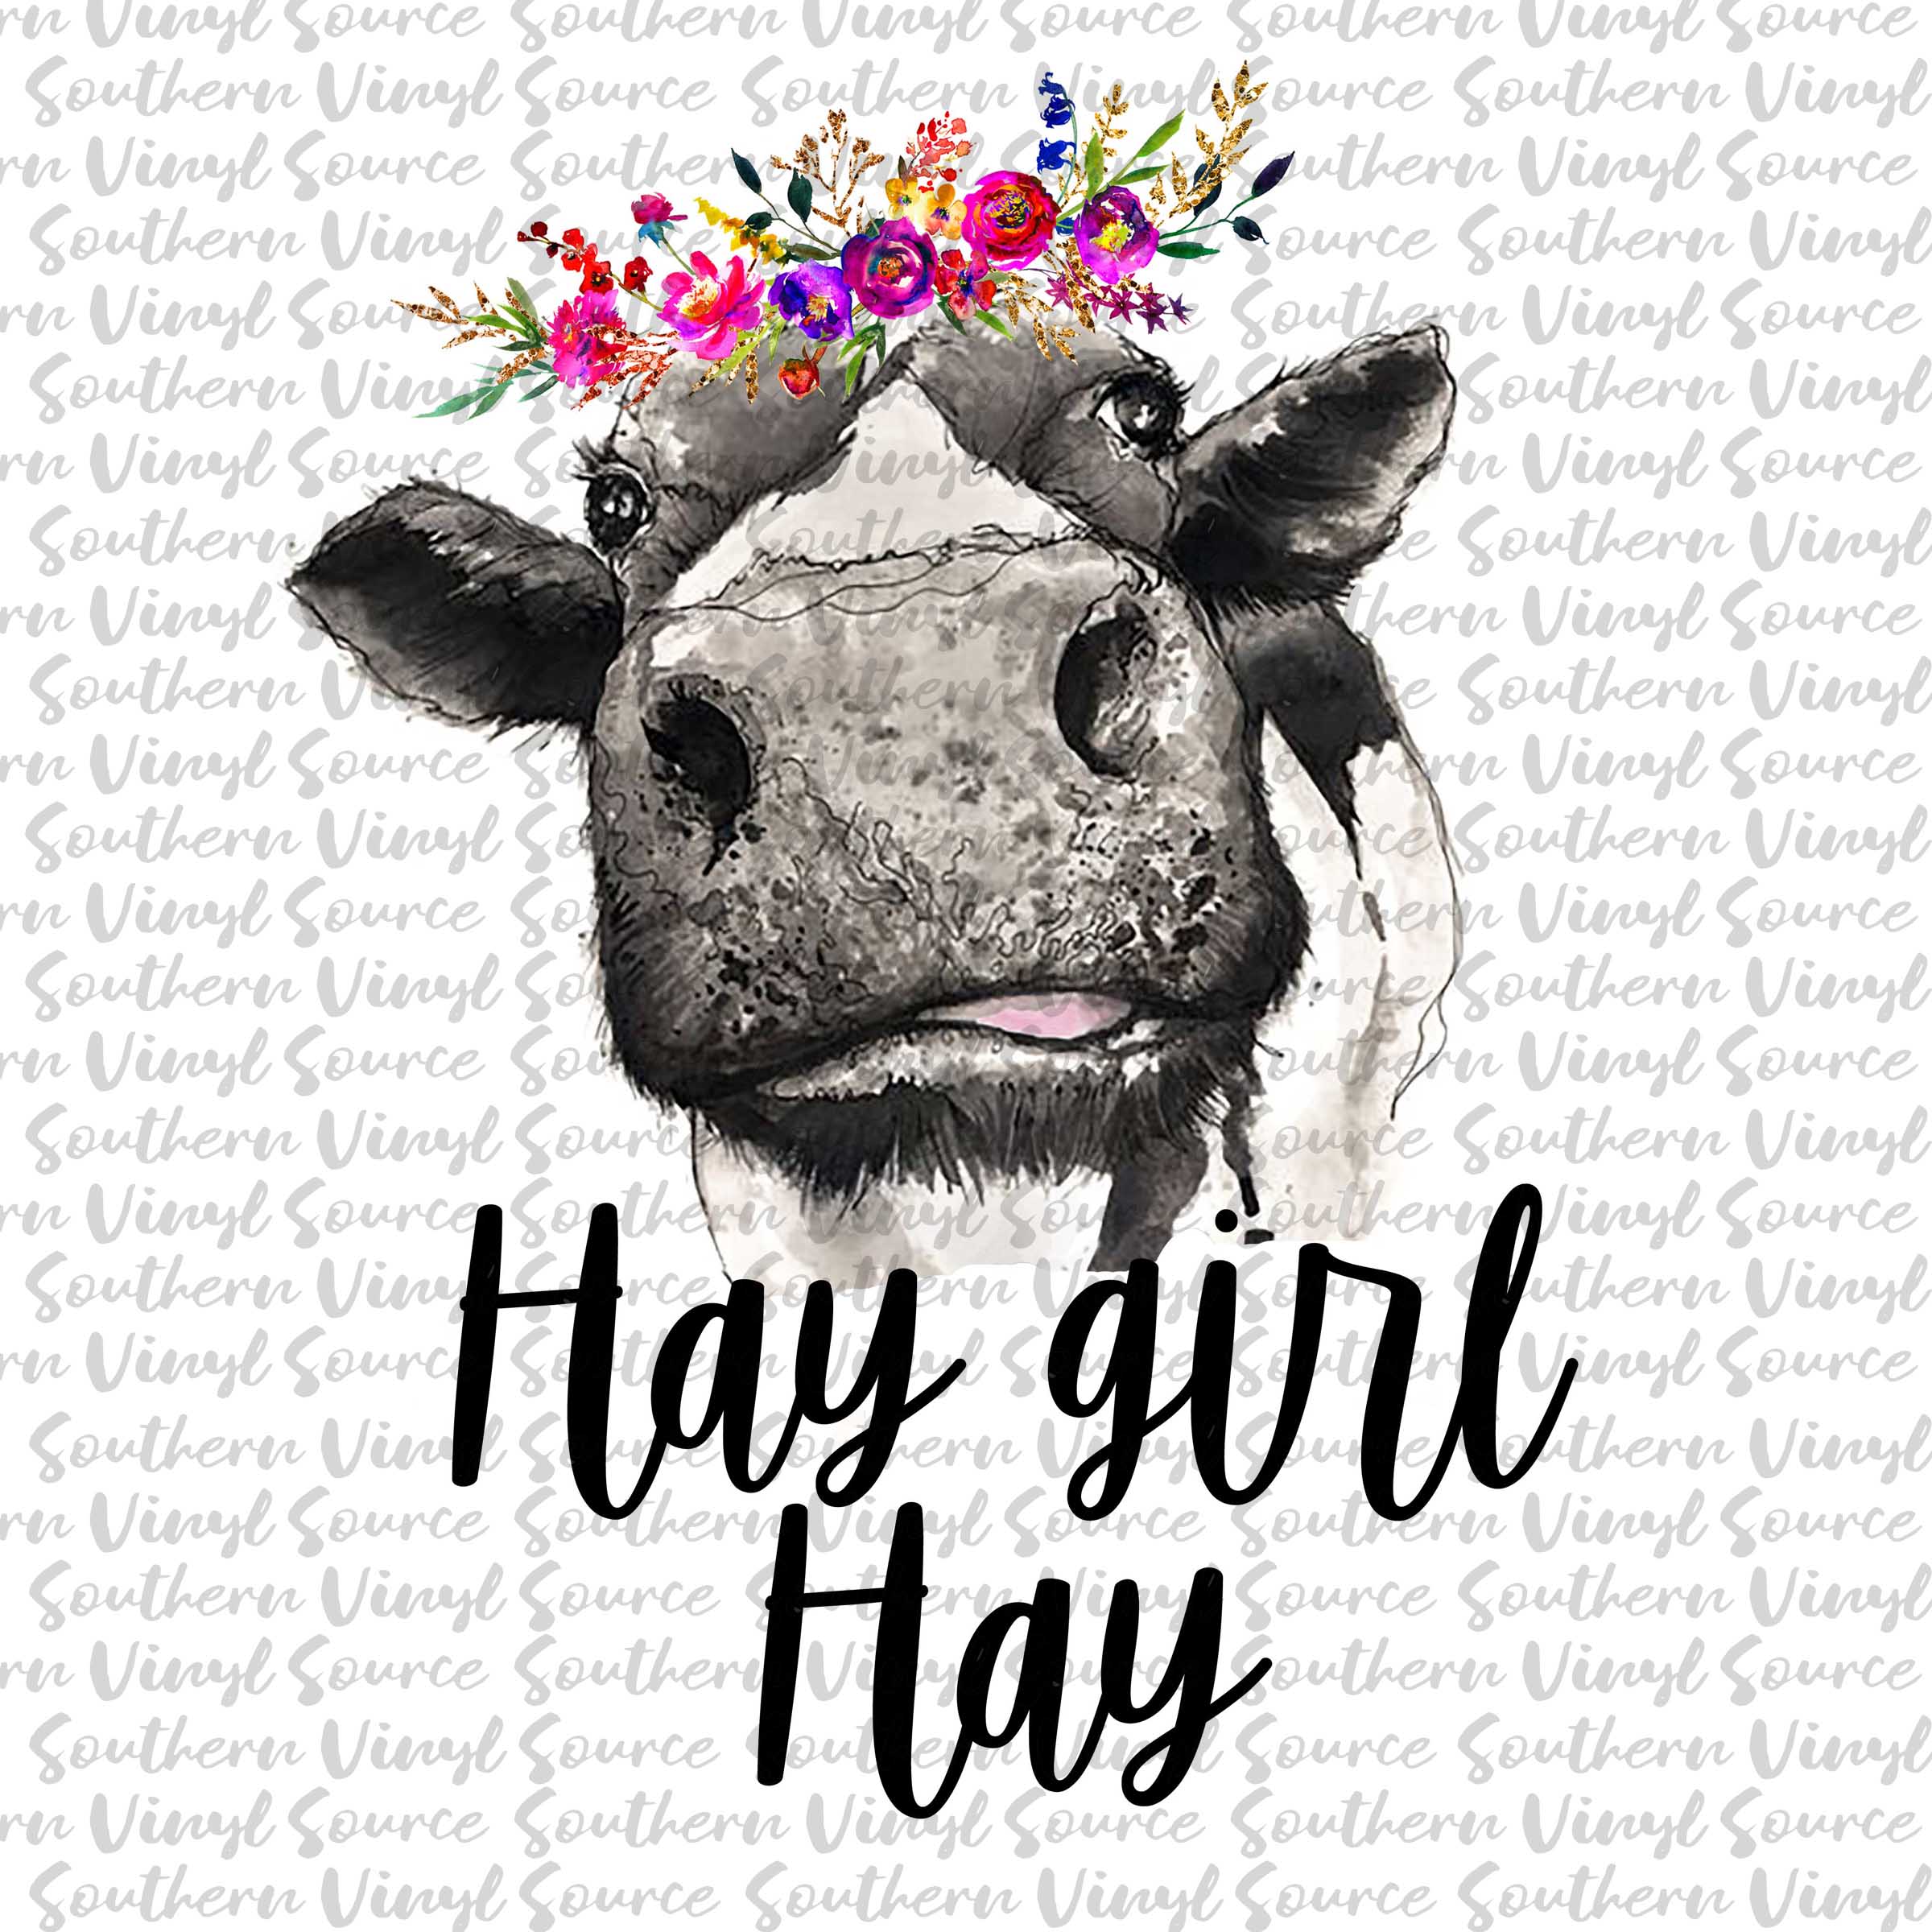 bestå Udholdenhed sværd 06 Hay Girl Hay Cow Animal Sublimation Print — Southern Vinyl Source